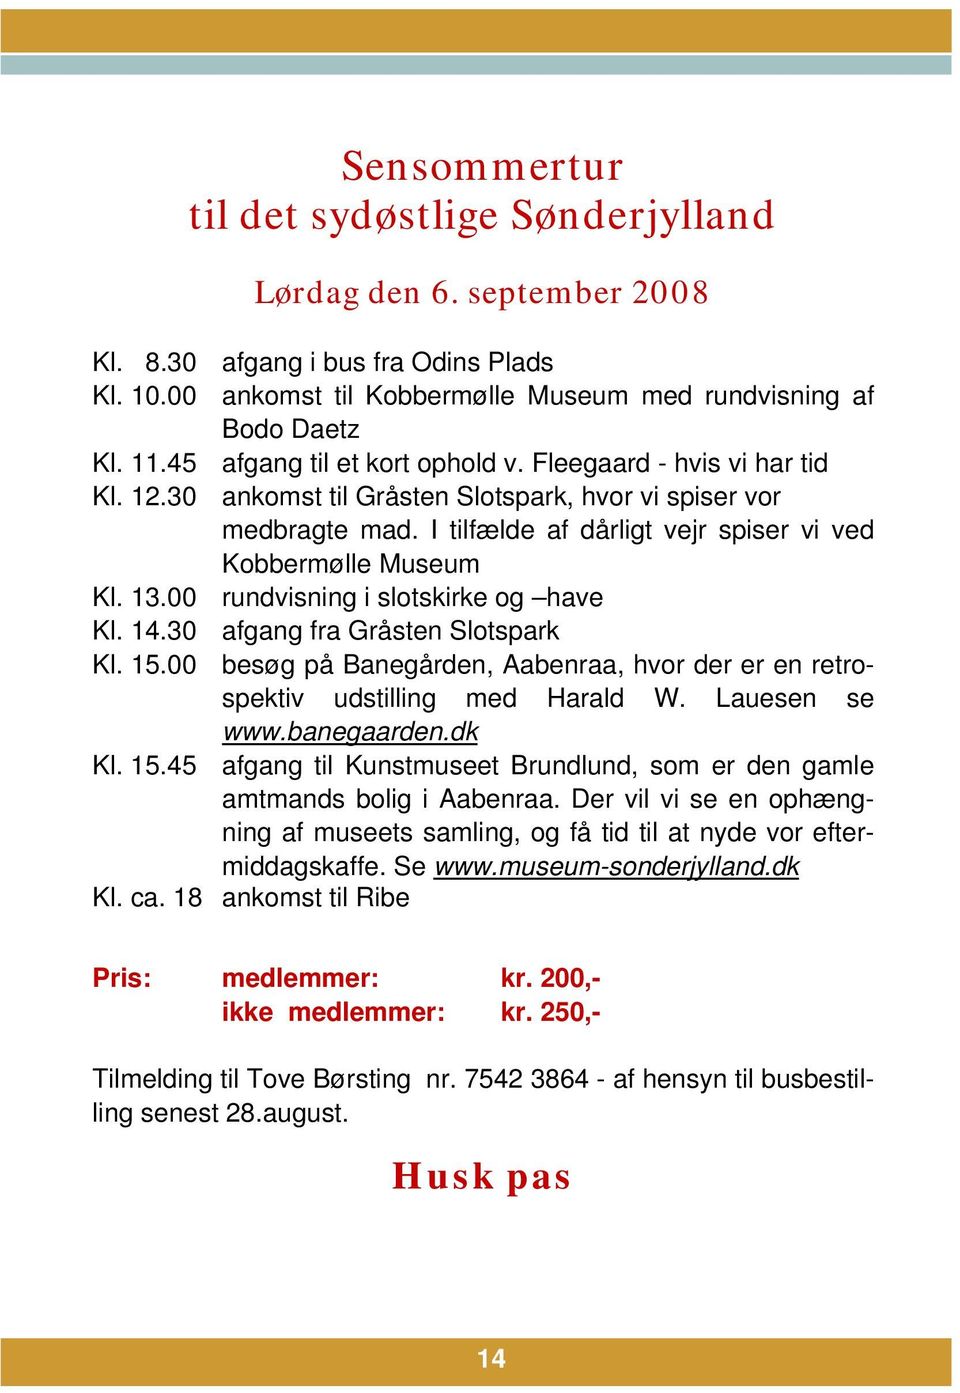 13.00 rundvisning i slotskirke og have Kl. 14.30 afgang fra Gråsten Slotspark Kl. 15.00 besøg på Banegården, Aabenraa, hvor der er en retrospektiv udstilling med Harald W. Lauesen se www.banegaarden.